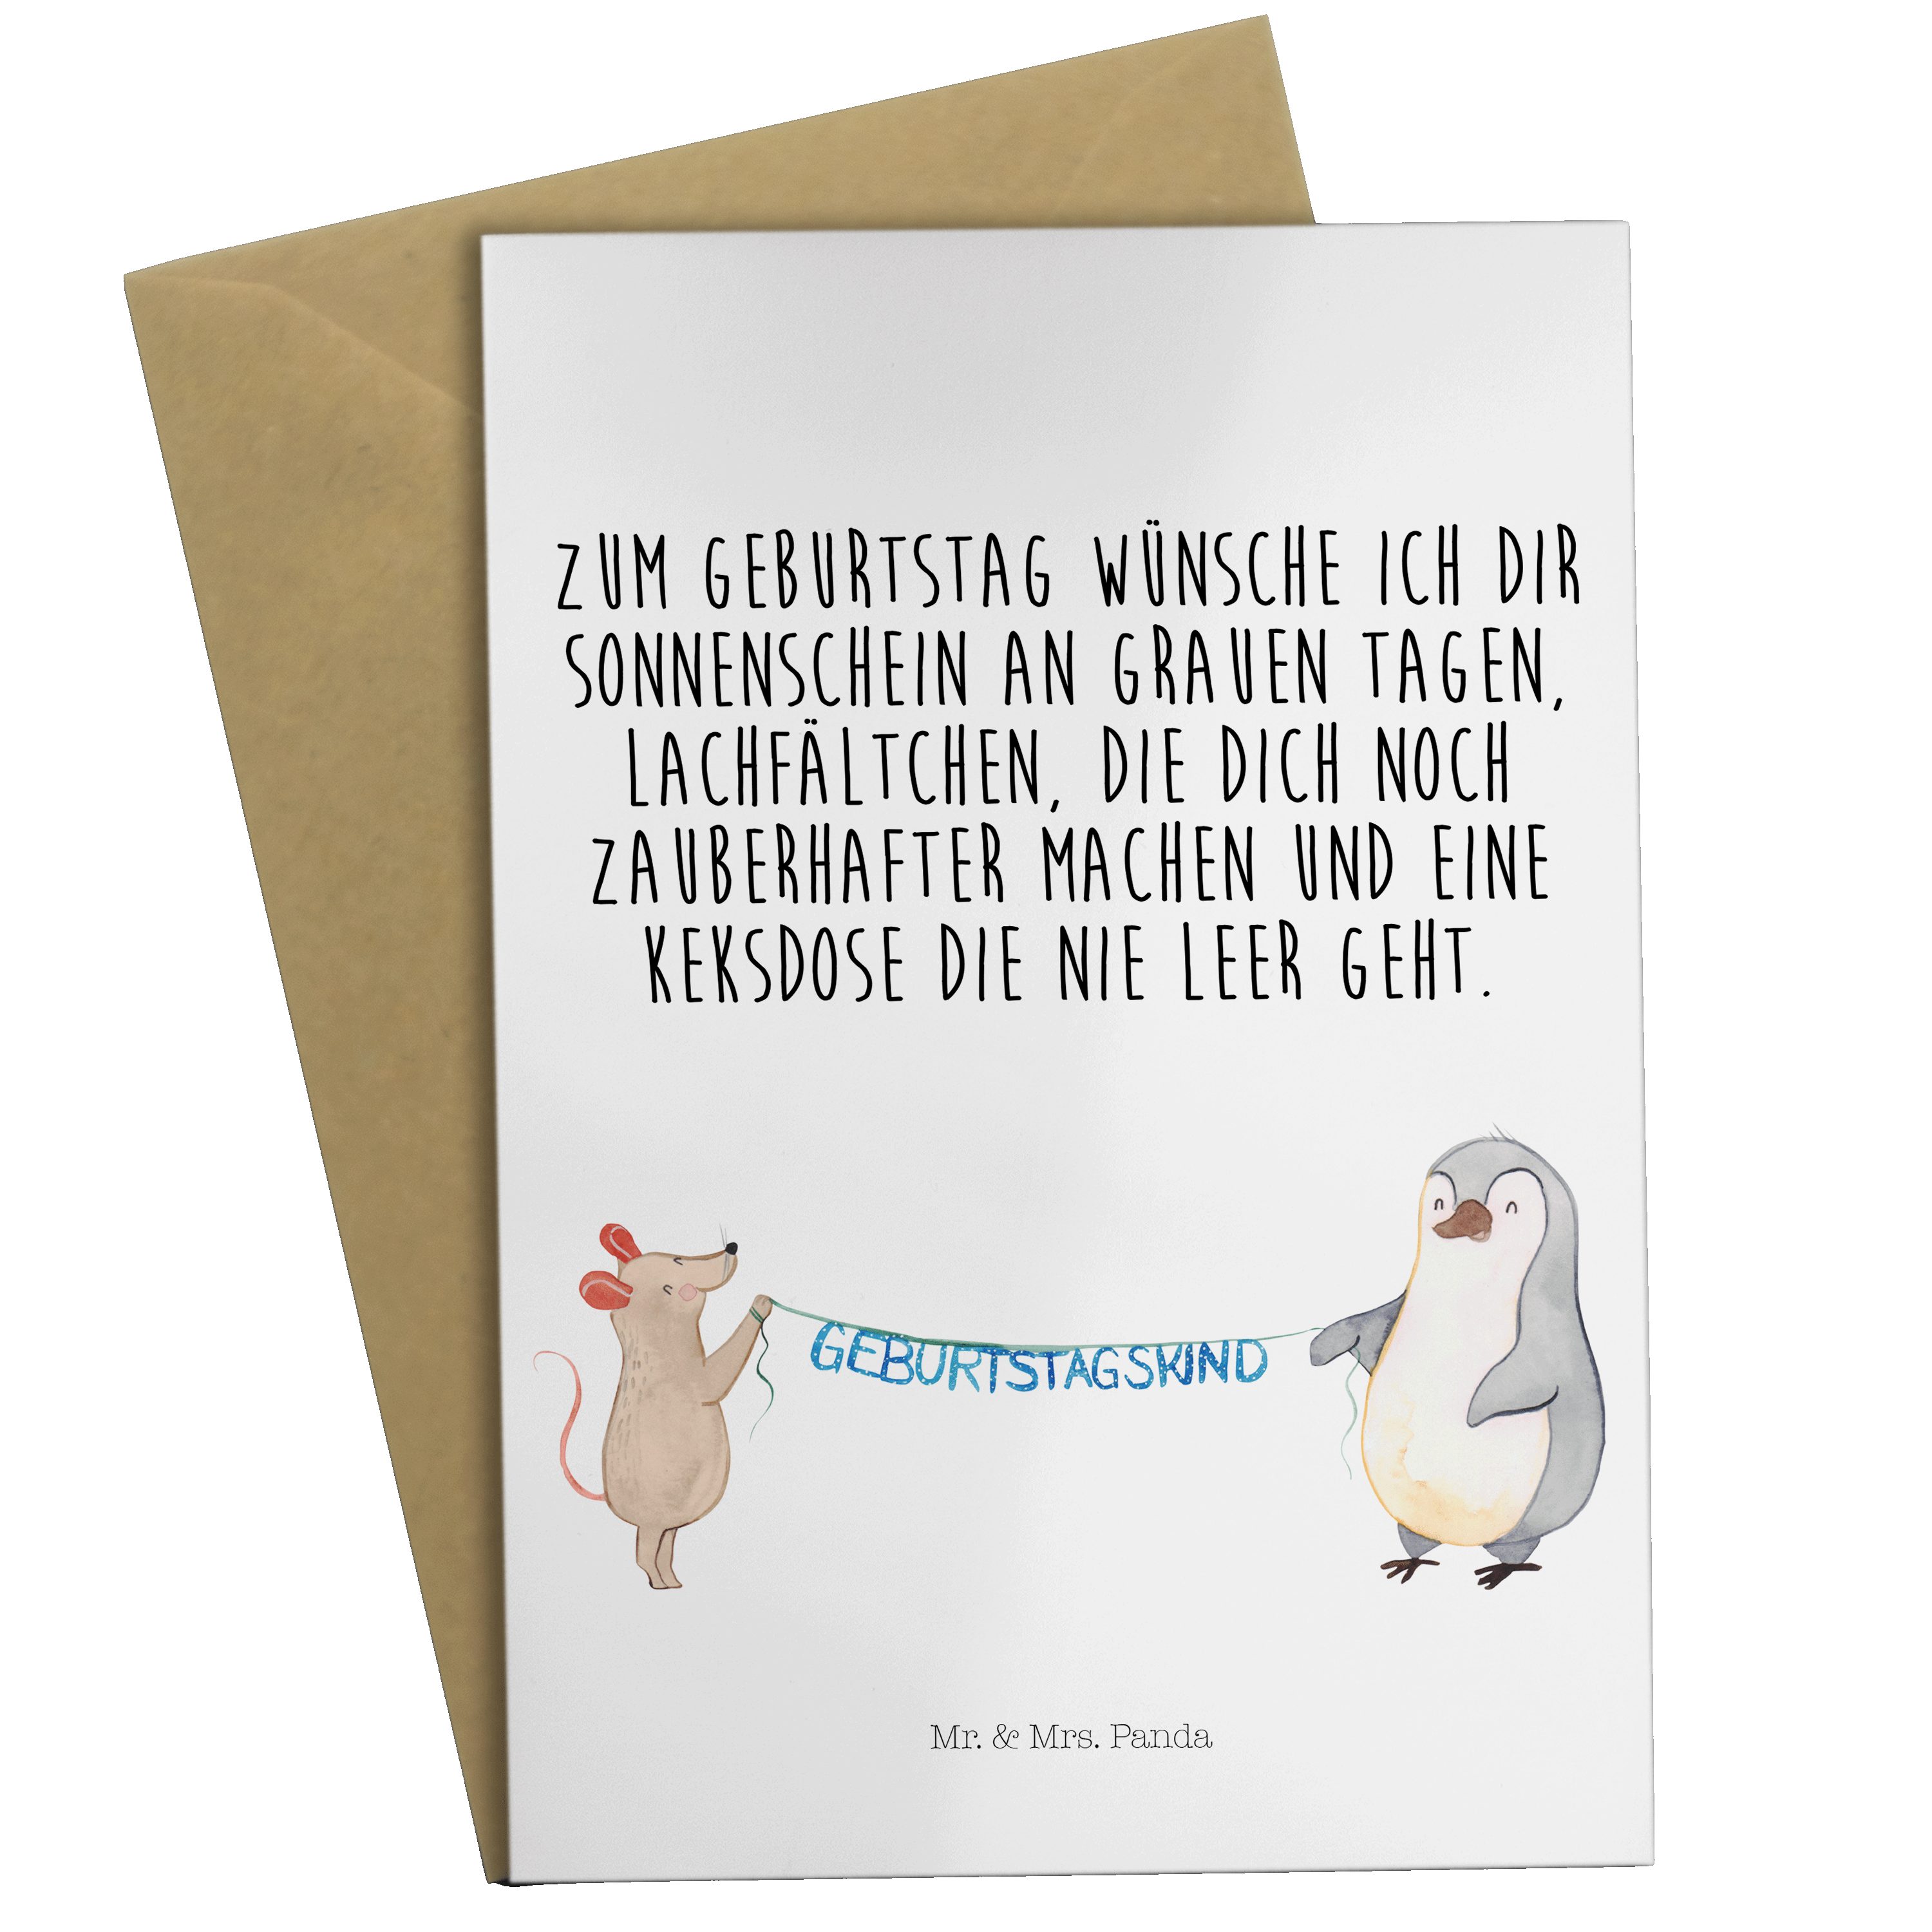 Mr. & Mrs. Panda Grußkarte Maus Pinguin Geburtstag - Weiß - Geschenk, Geburtstagskind, Hochzeits